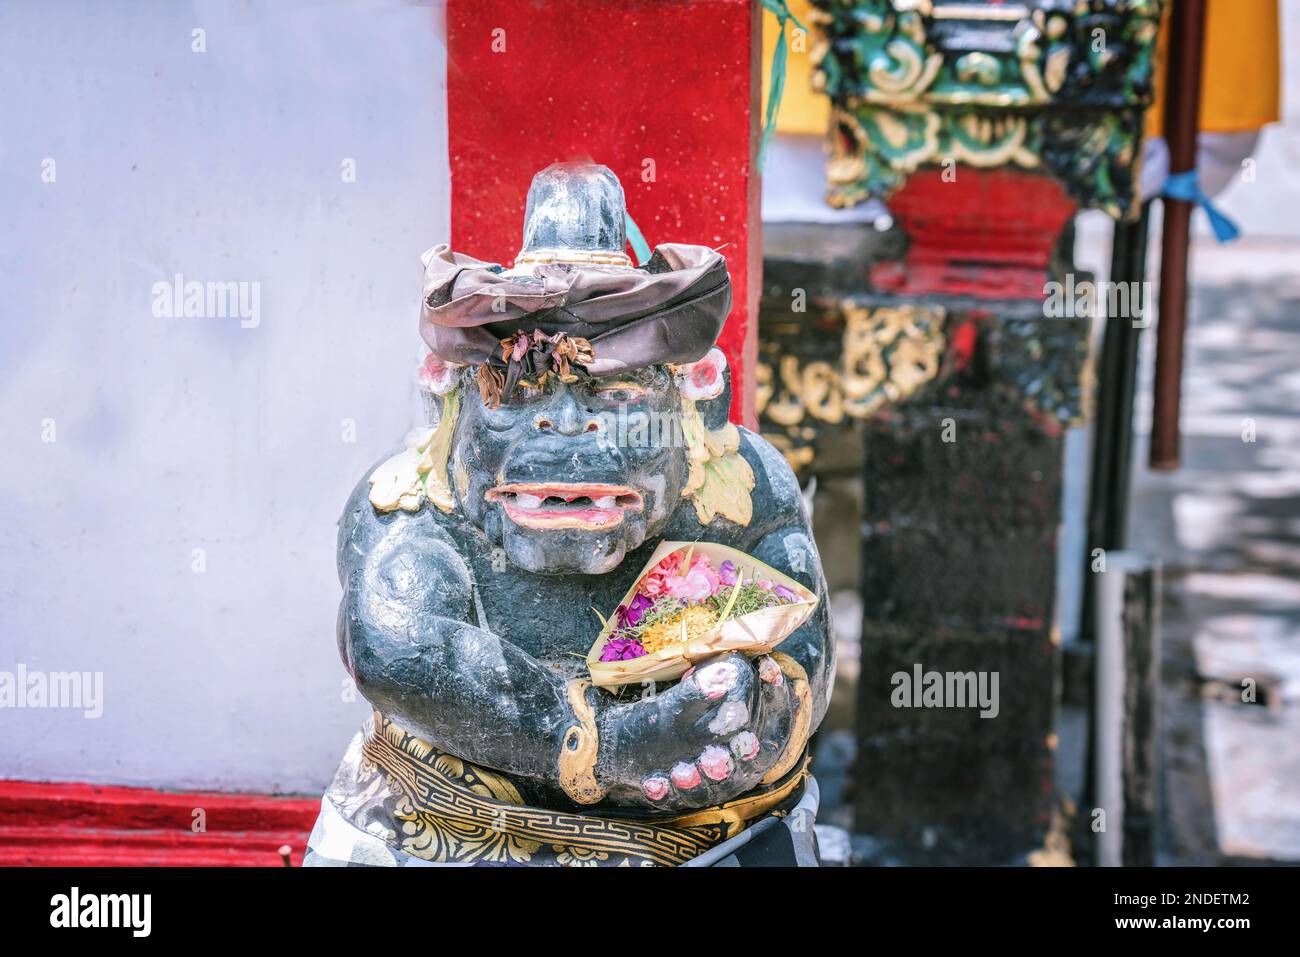 La tradizionale statua della guardia Balinesiana di solito collocata nei punti di ingresso a luoghi pubblici o privati, foto ravvicinata Foto Stock